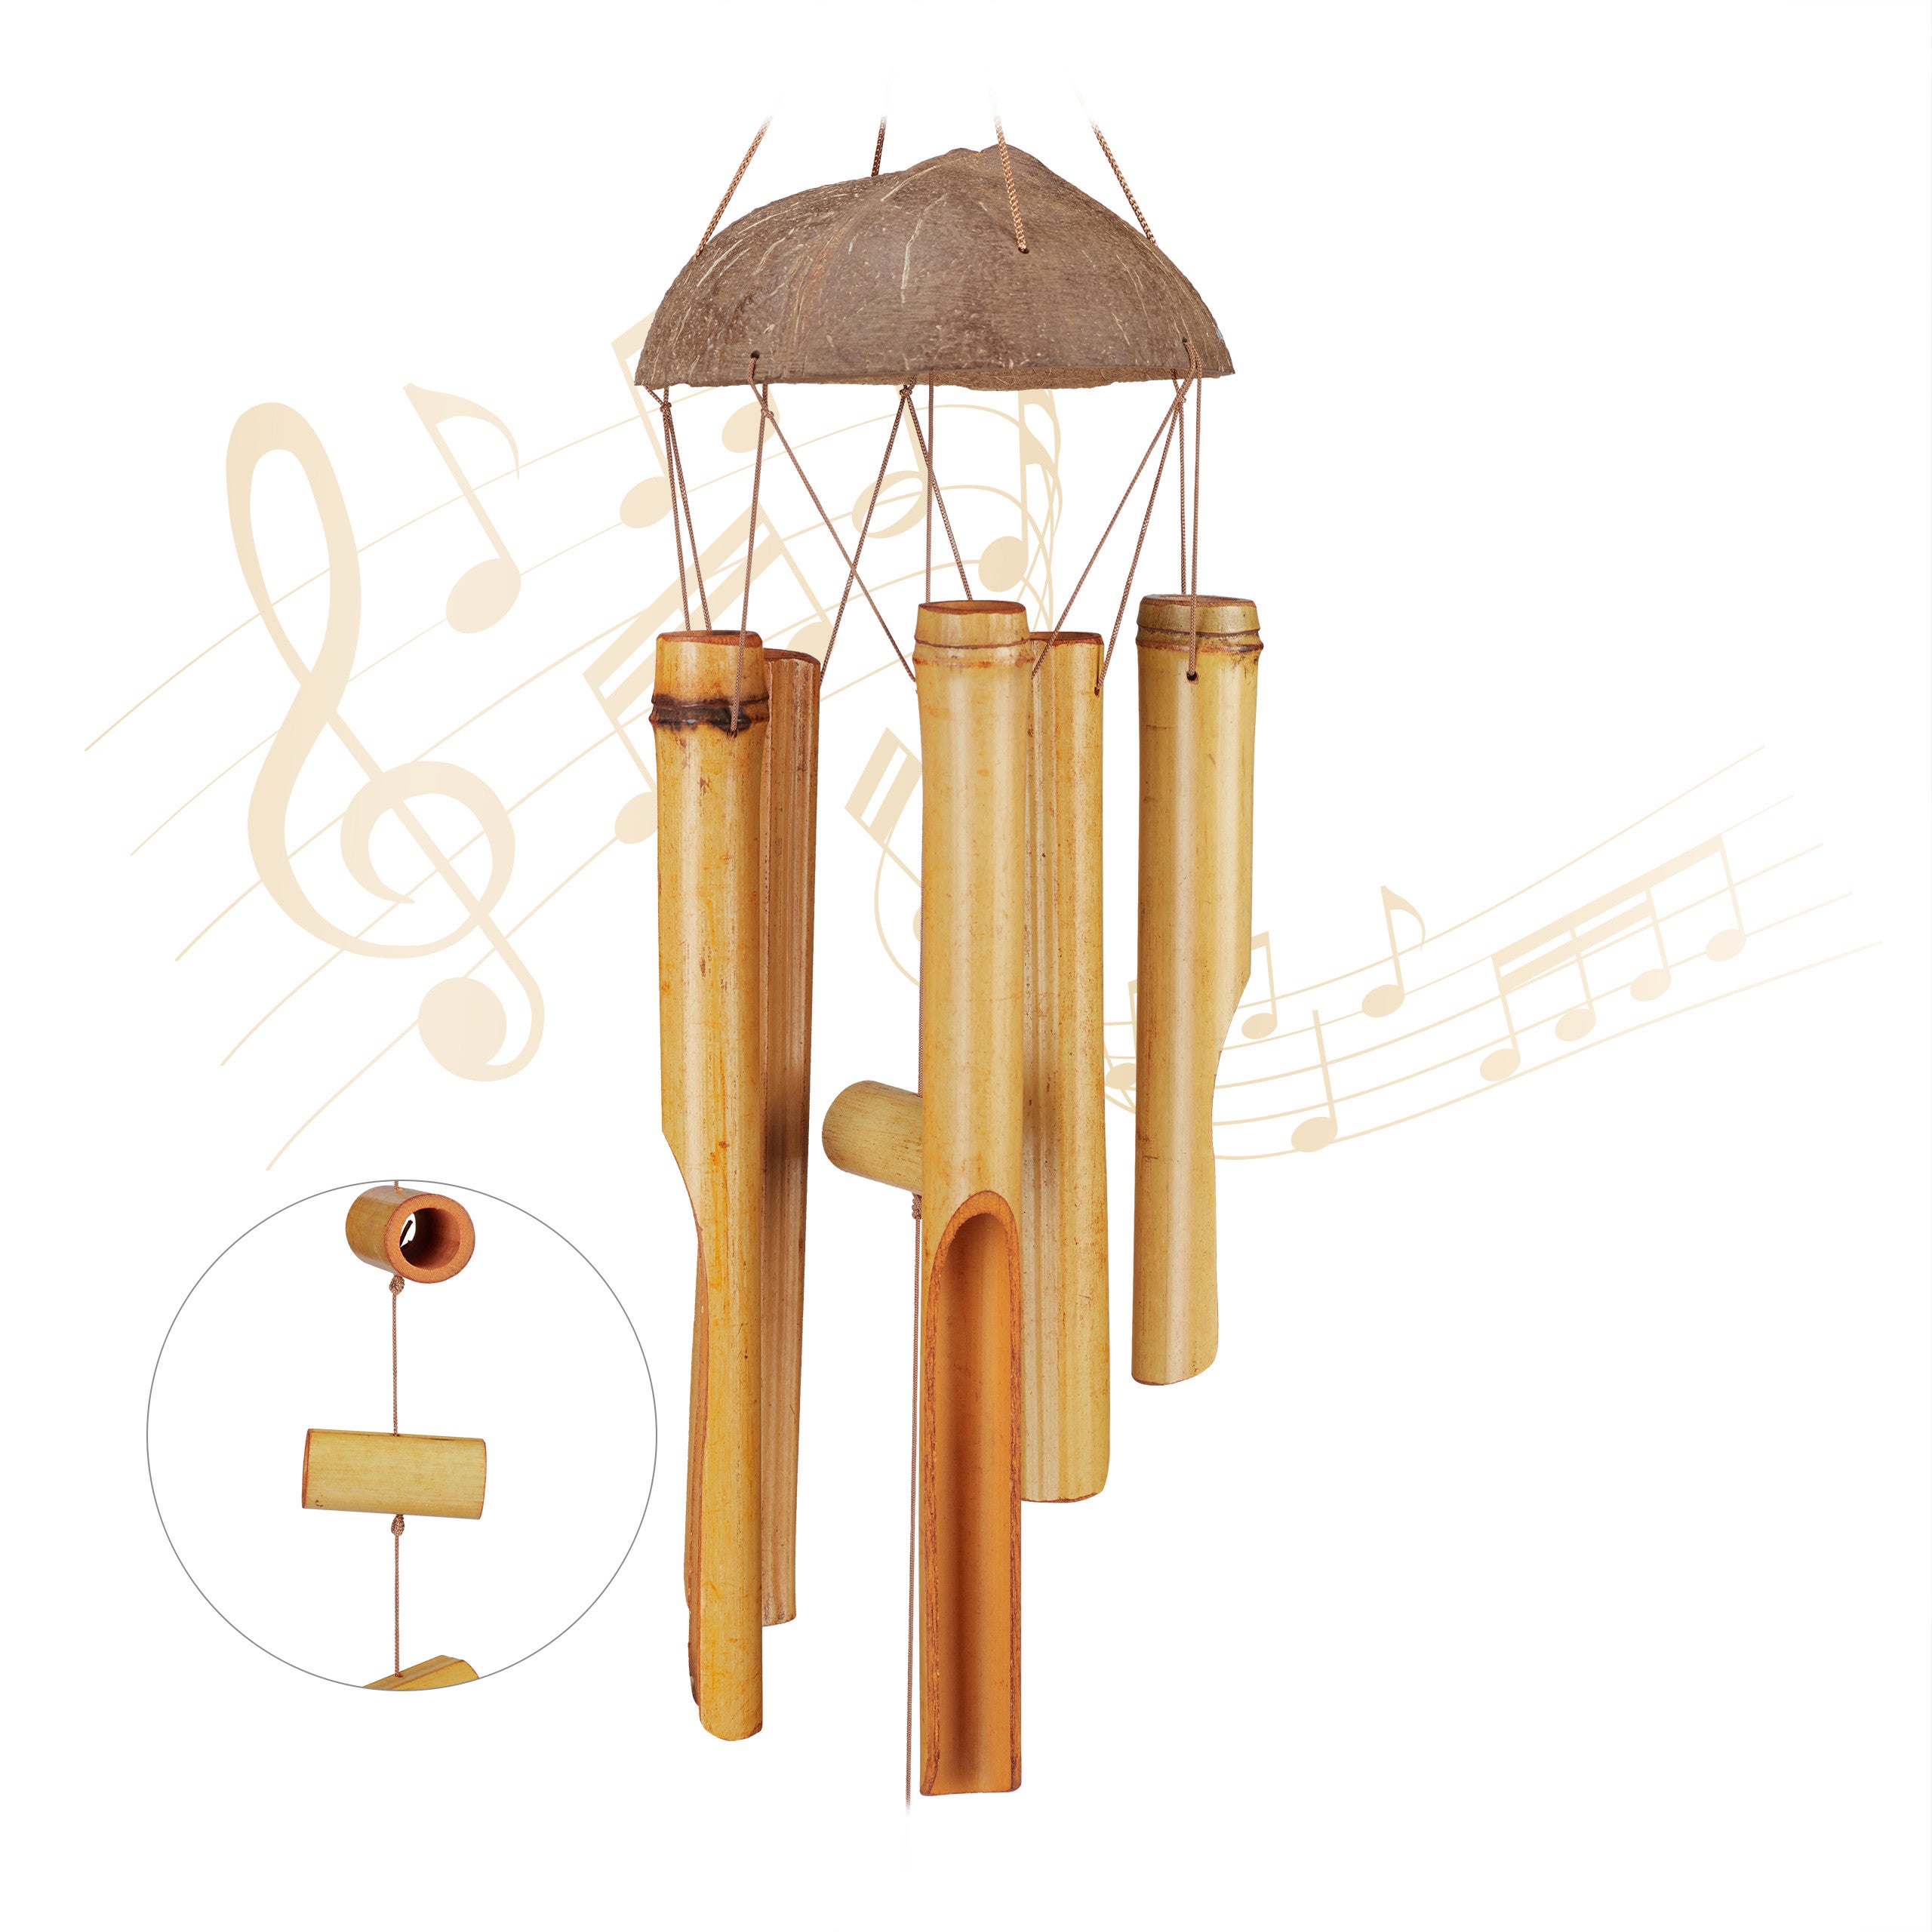 Carillon à vent en bambou, carillons à vent suspendus pour l'extérieur,  carillons à vent musicaux pour décoration de la maison, cadeau souvenir  pour